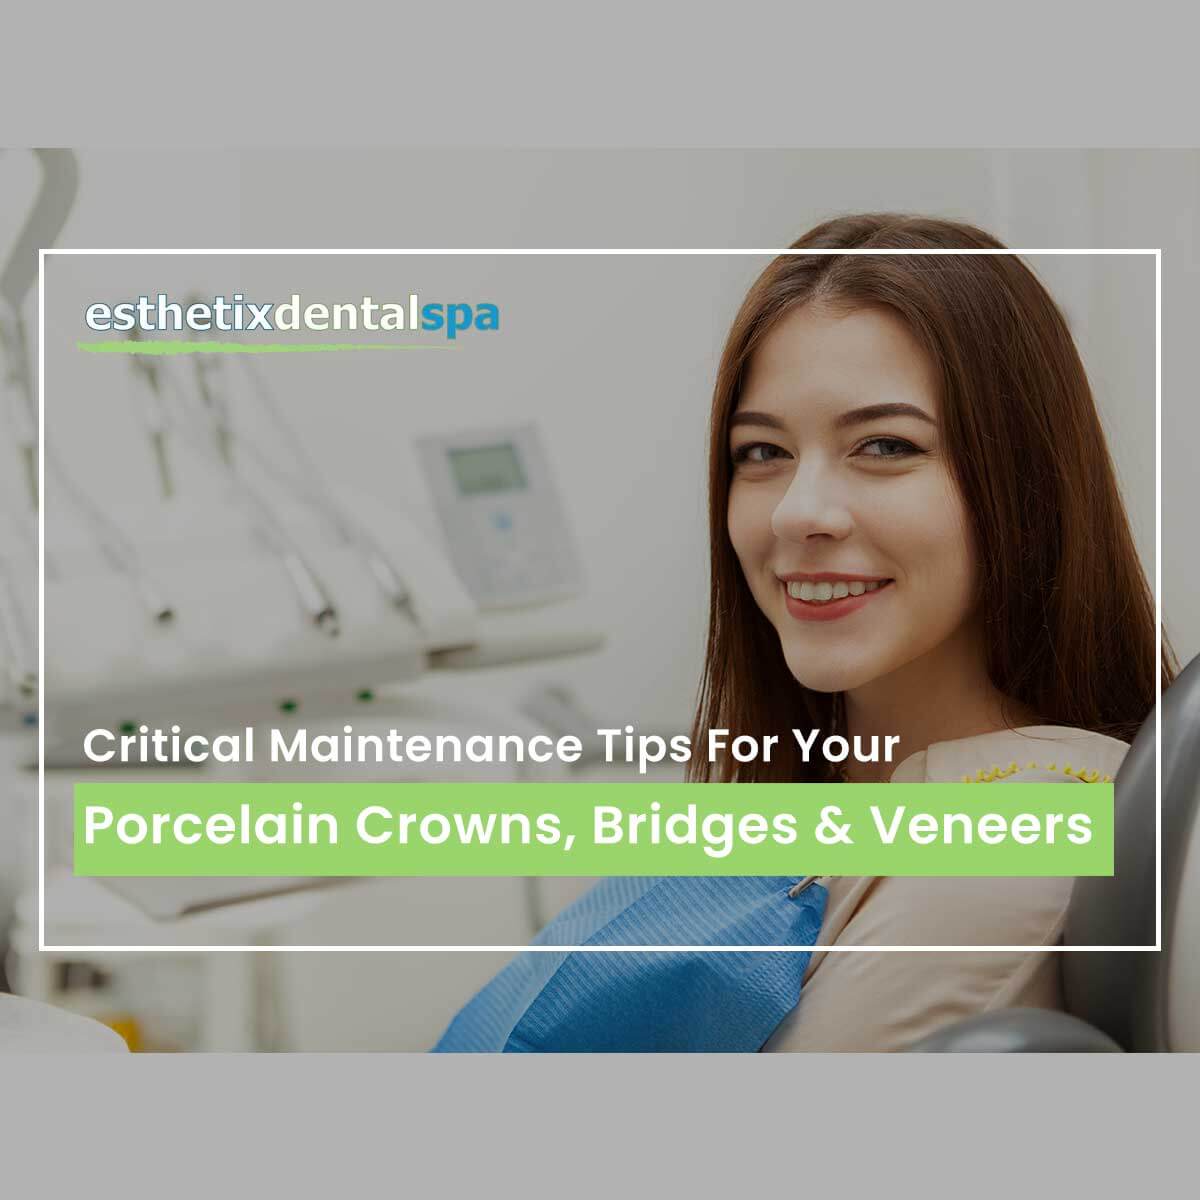 Critical Maintenance Tips For Your Porcelain Crowns, Bridges & Veneers